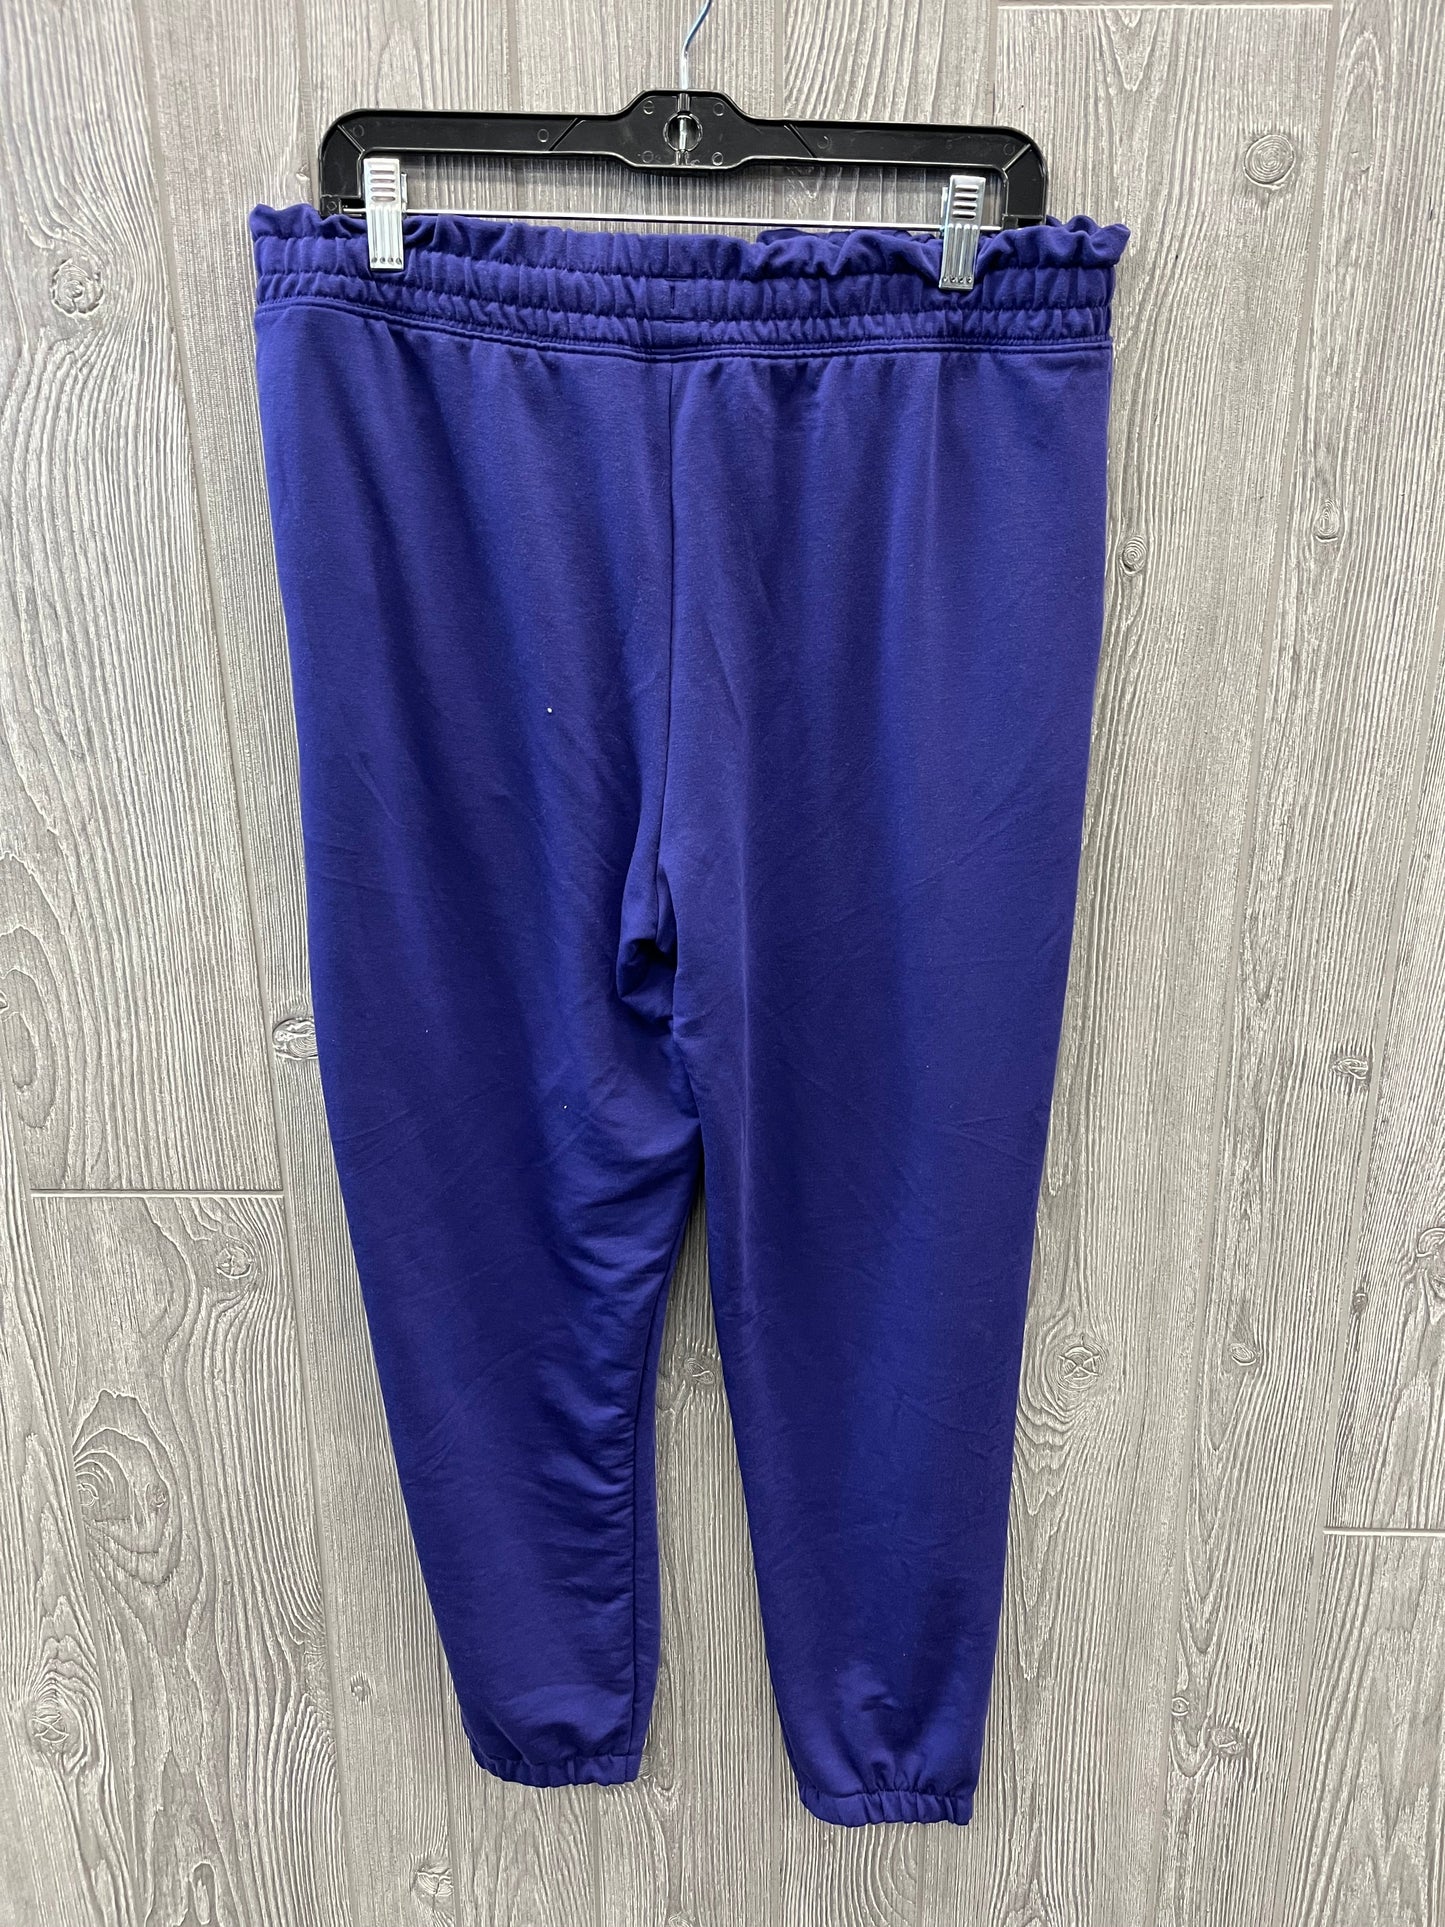 Purple Athletic Pants Under Armour, Size L